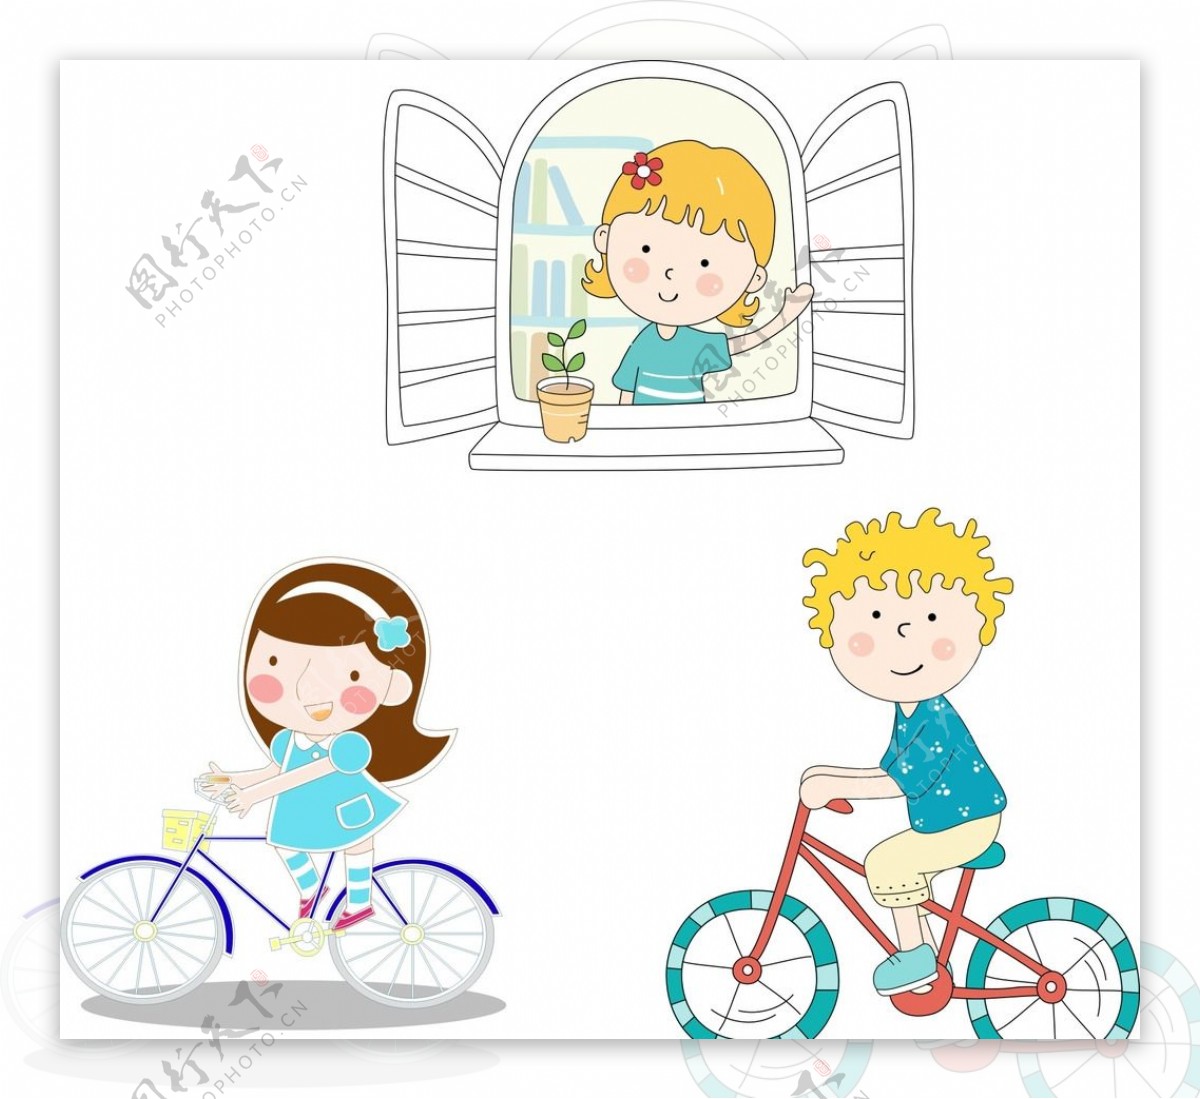 骑自行车的儿童